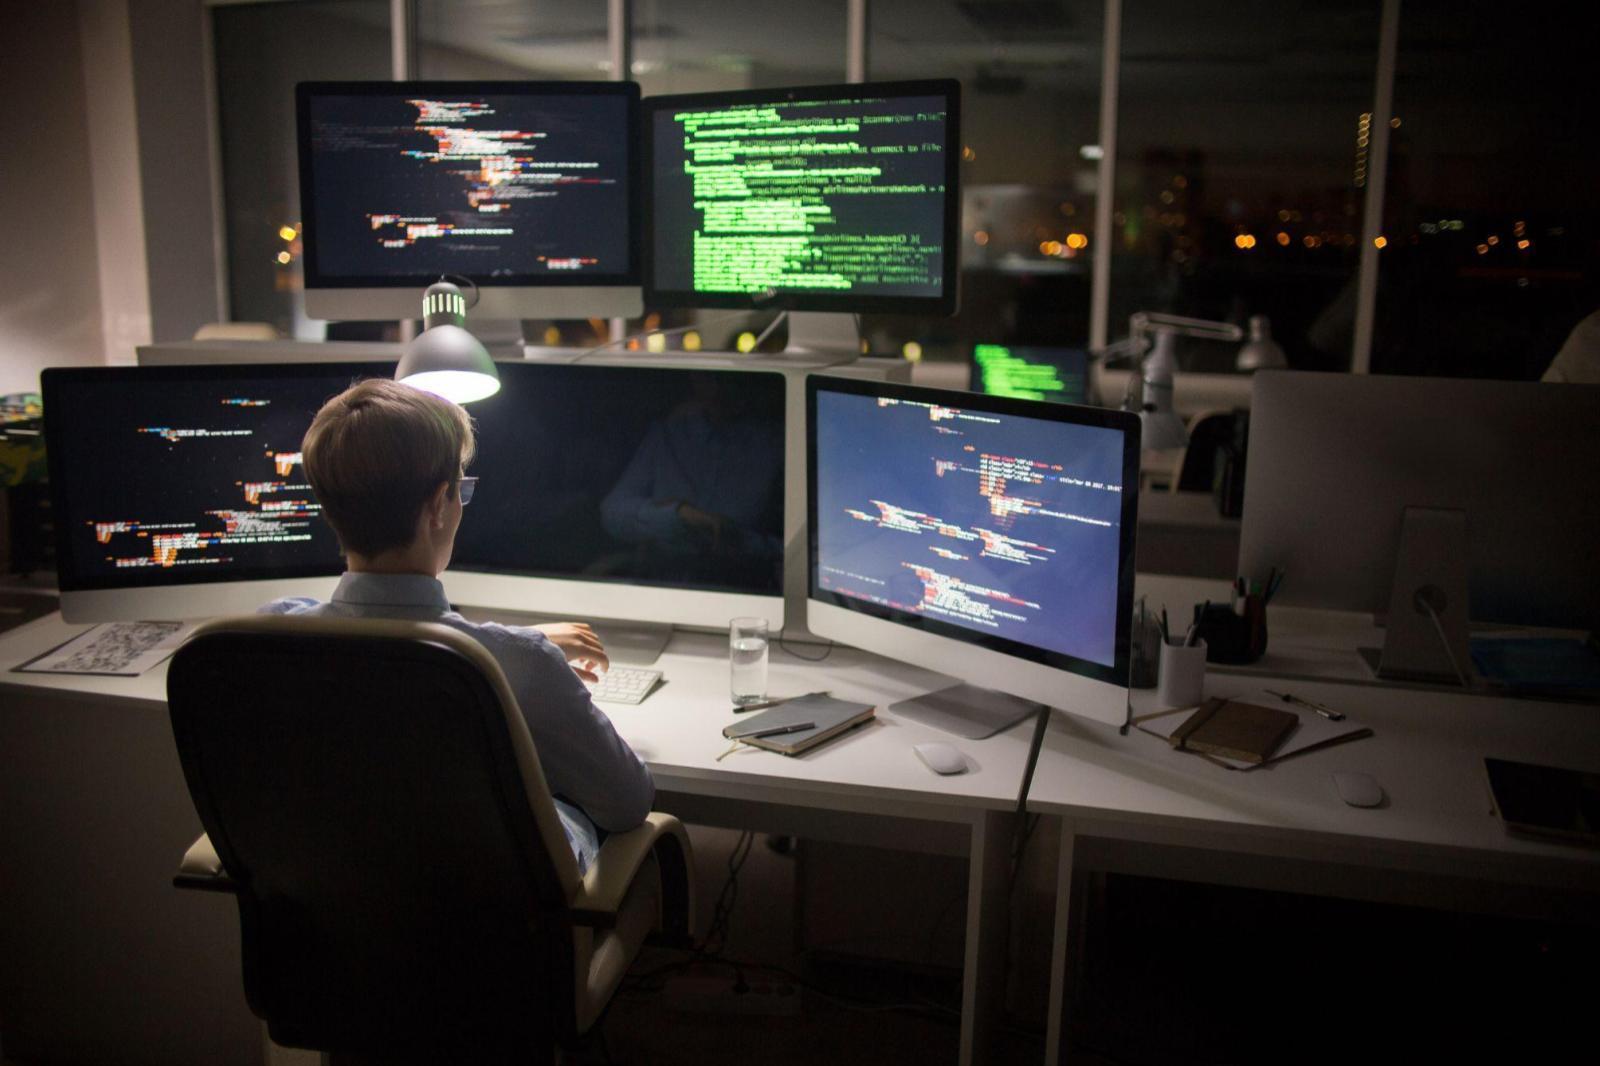 Imagem capa do conteúdo sobre "Jupyter notebook", onde exibe uma vista traseira do codificador altamente profissional olhando para relógio de pulso enquanto está sentado na frente do computador e trabalhando no interior do escritório.